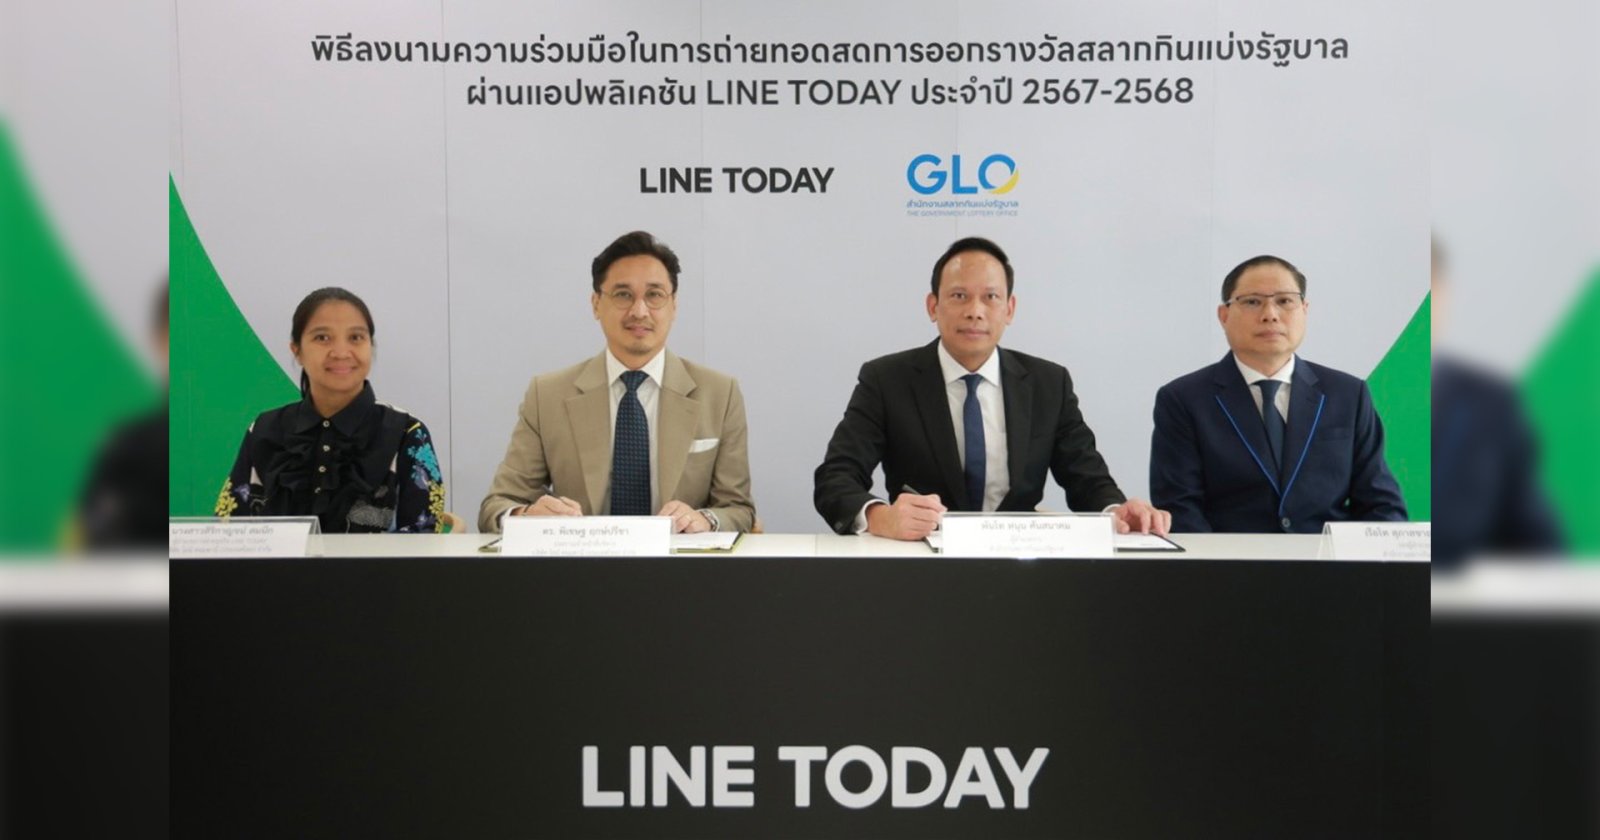 LINE ประเทศไทย ลงนามความร่วมมือกับ สำนักงานสลากกินแบ่งรัฐบาล ถ่ายทอดสดการออกรางวัลสลากบน LINE TODAY ต่อเนื่อง ปีที่ 7